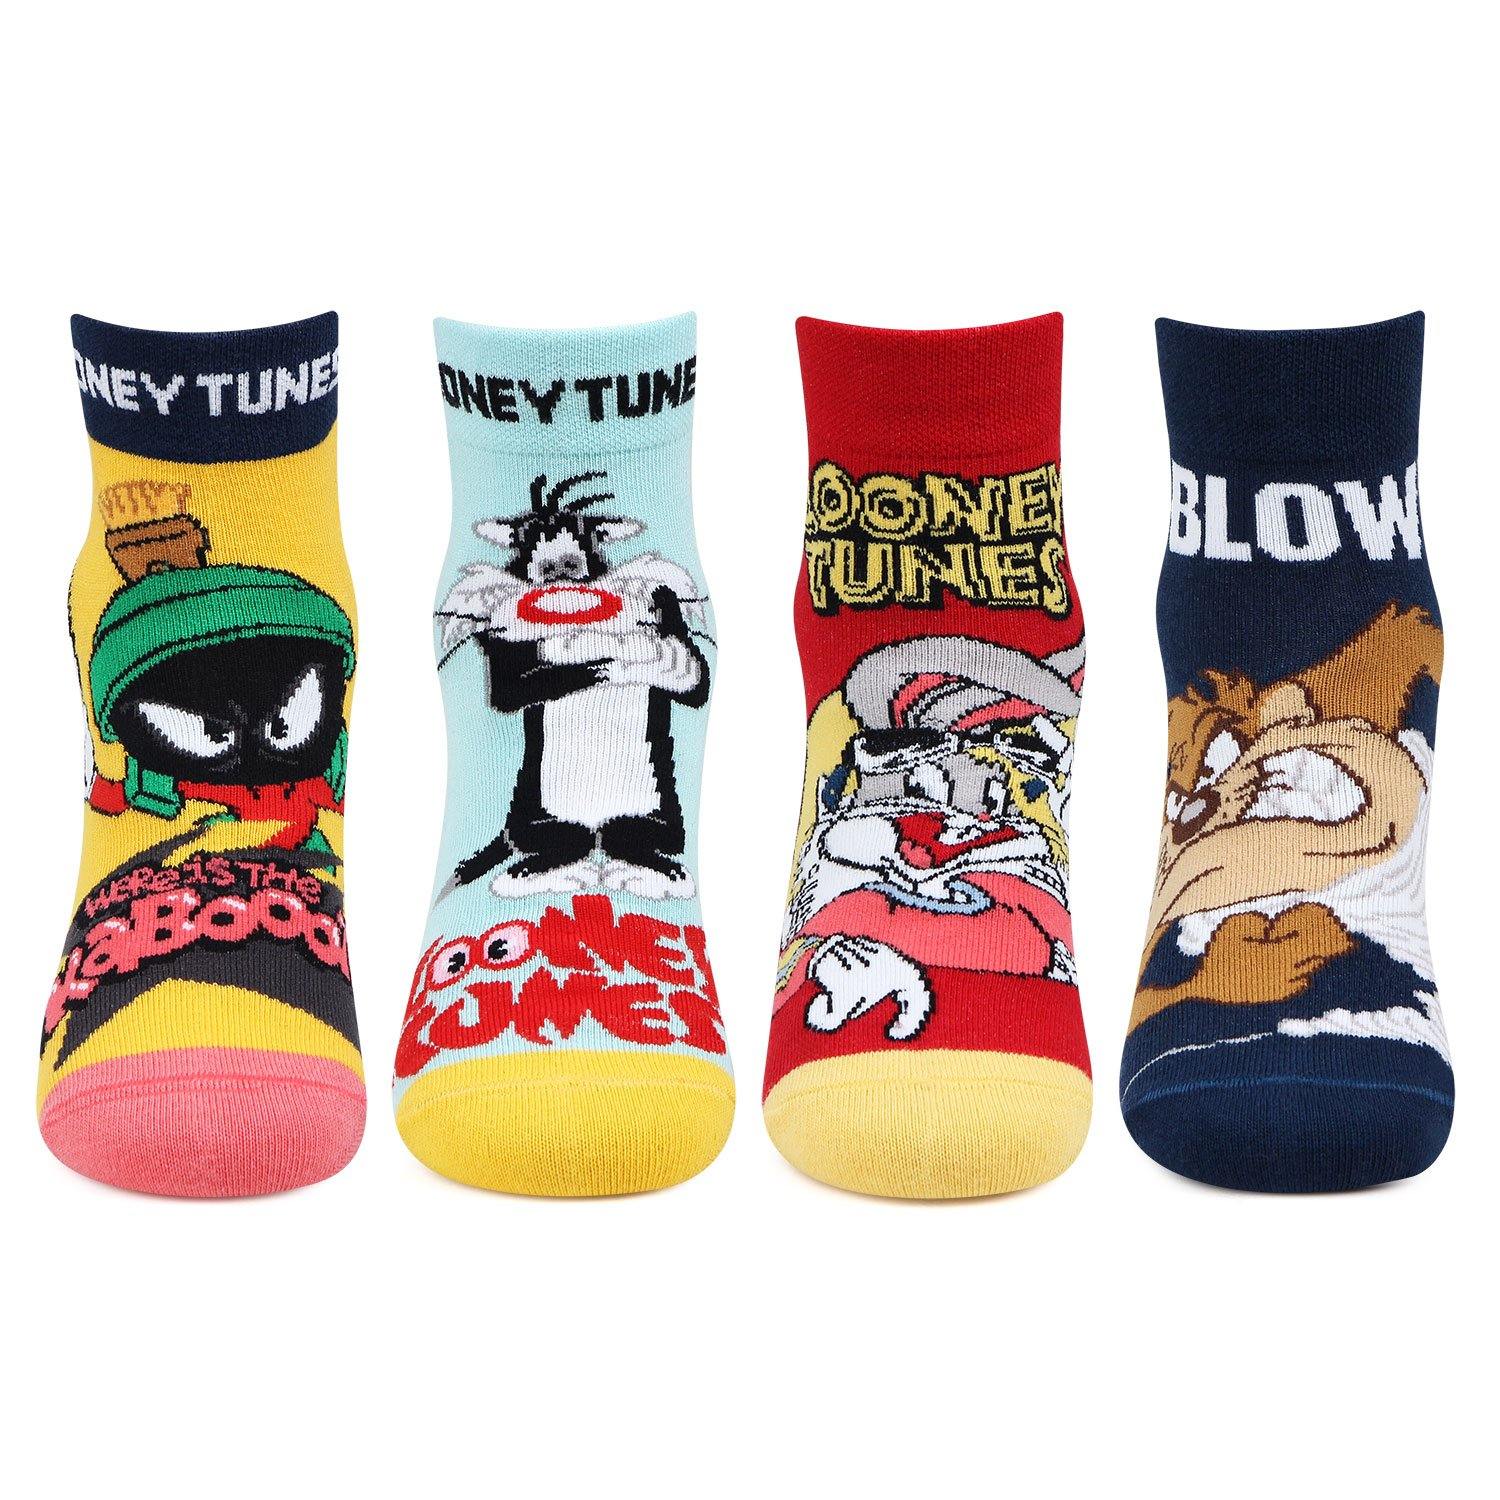 Looney Tunes Socks For Kids - Pack Of 4 – BONJOUR